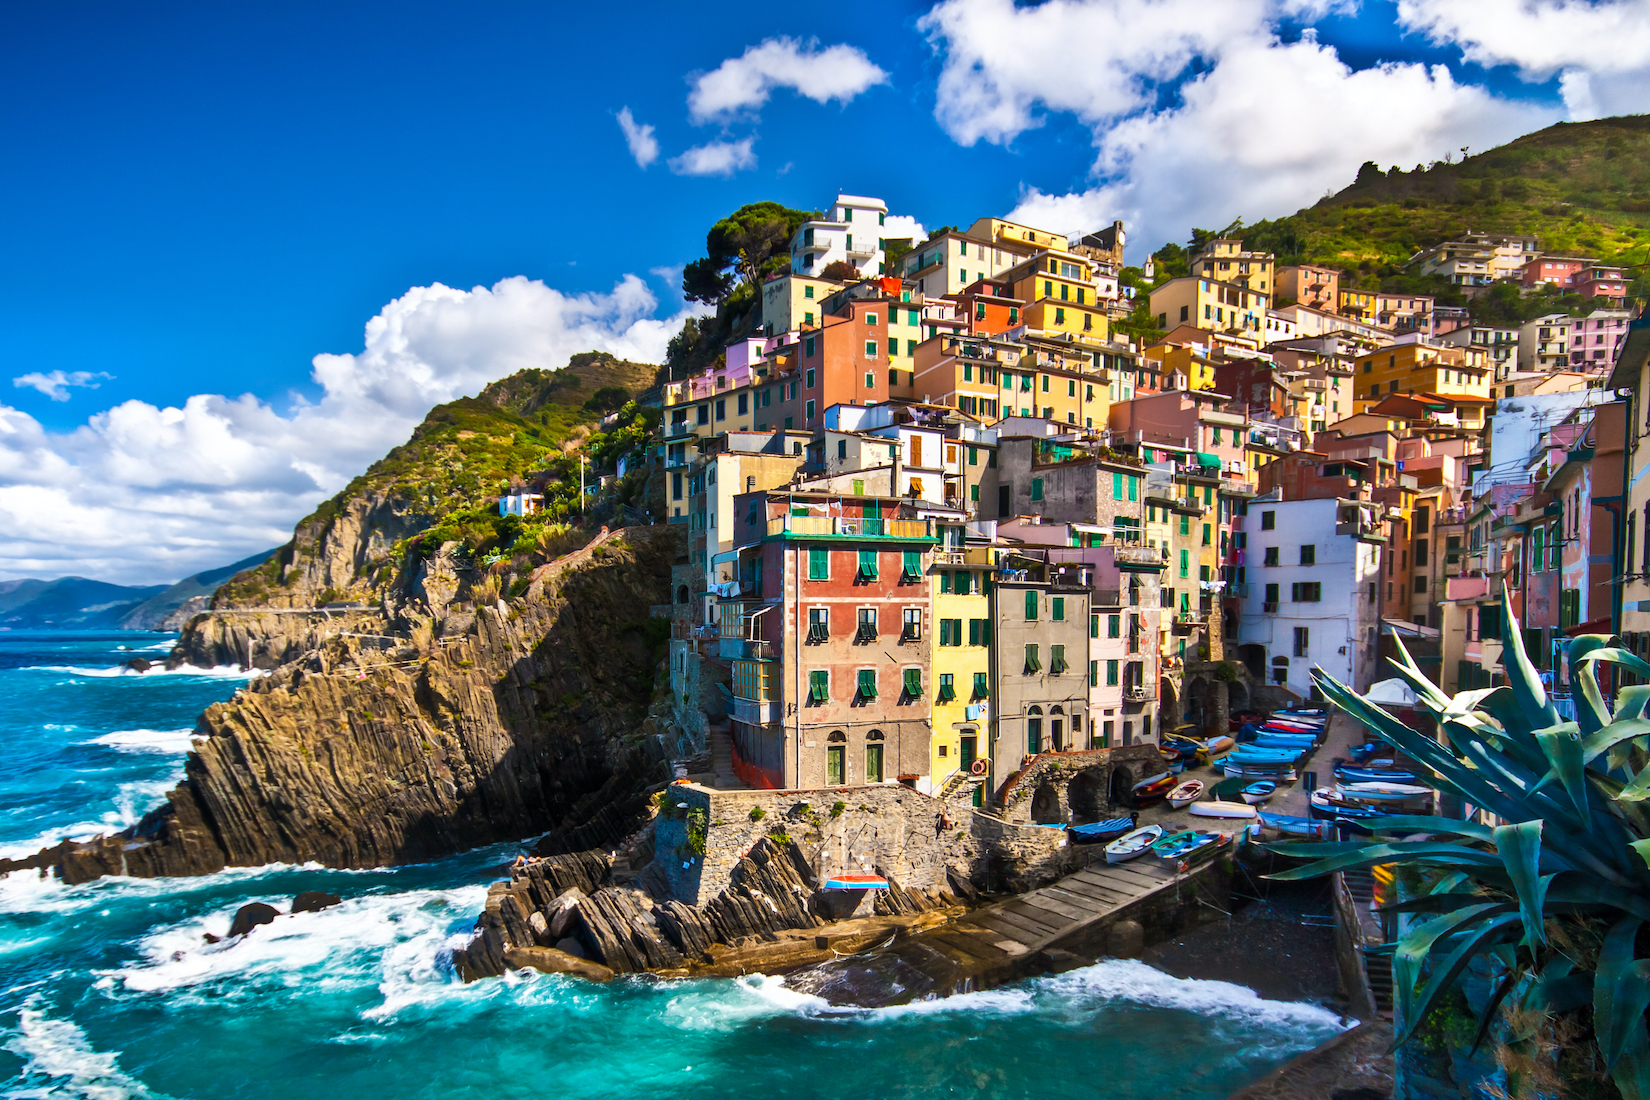 Riomaggiore, Włochy, fot. Shutterstock.com